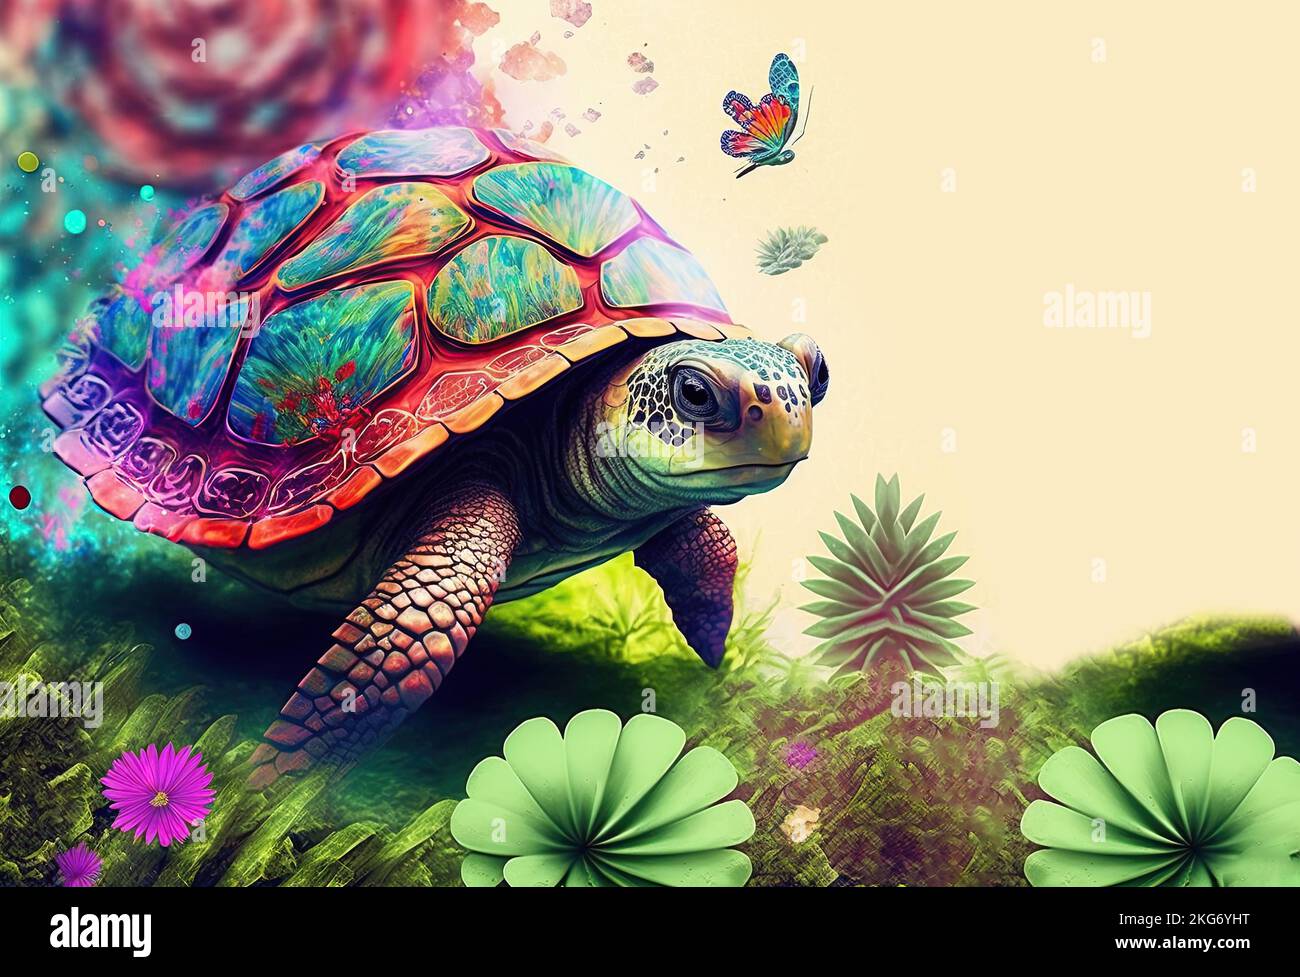 Eine grüne Meeresschildkröte, die im Freien zwischen tropischen Pflanzen in psychedelischen Farben spaziert. Meeresschildkröten leben in allen Ozeanen der Welt. Weißer Hintergrund mit Stockfoto